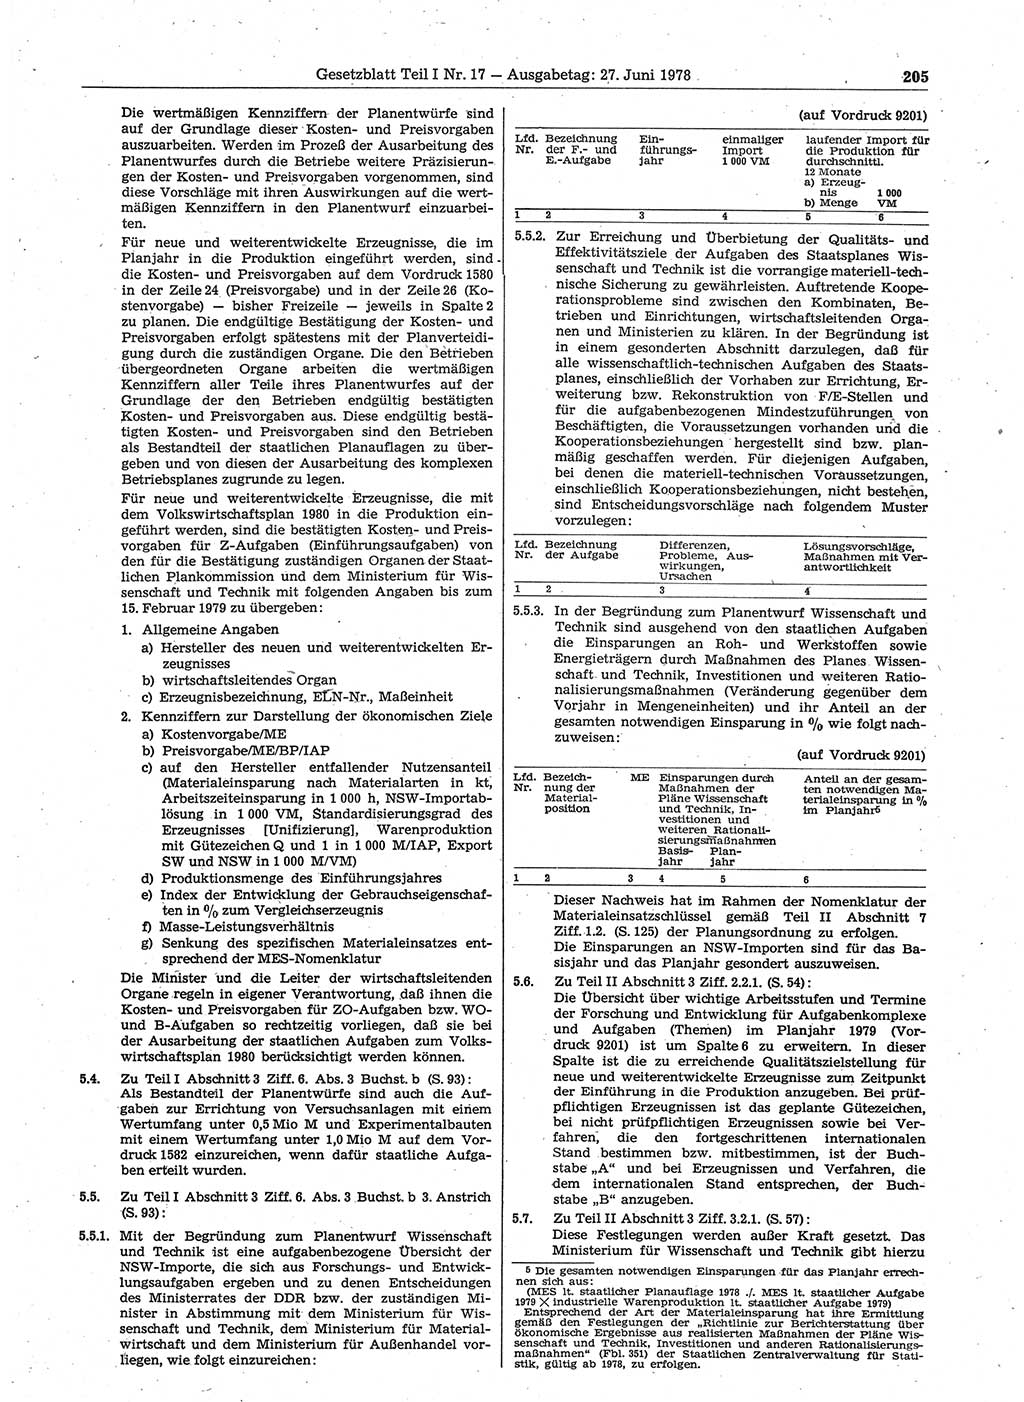 Gesetzblatt (GBl.) der Deutschen Demokratischen Republik (DDR) Teil Ⅰ 1978, Seite 205 (GBl. DDR Ⅰ 1978, S. 205)